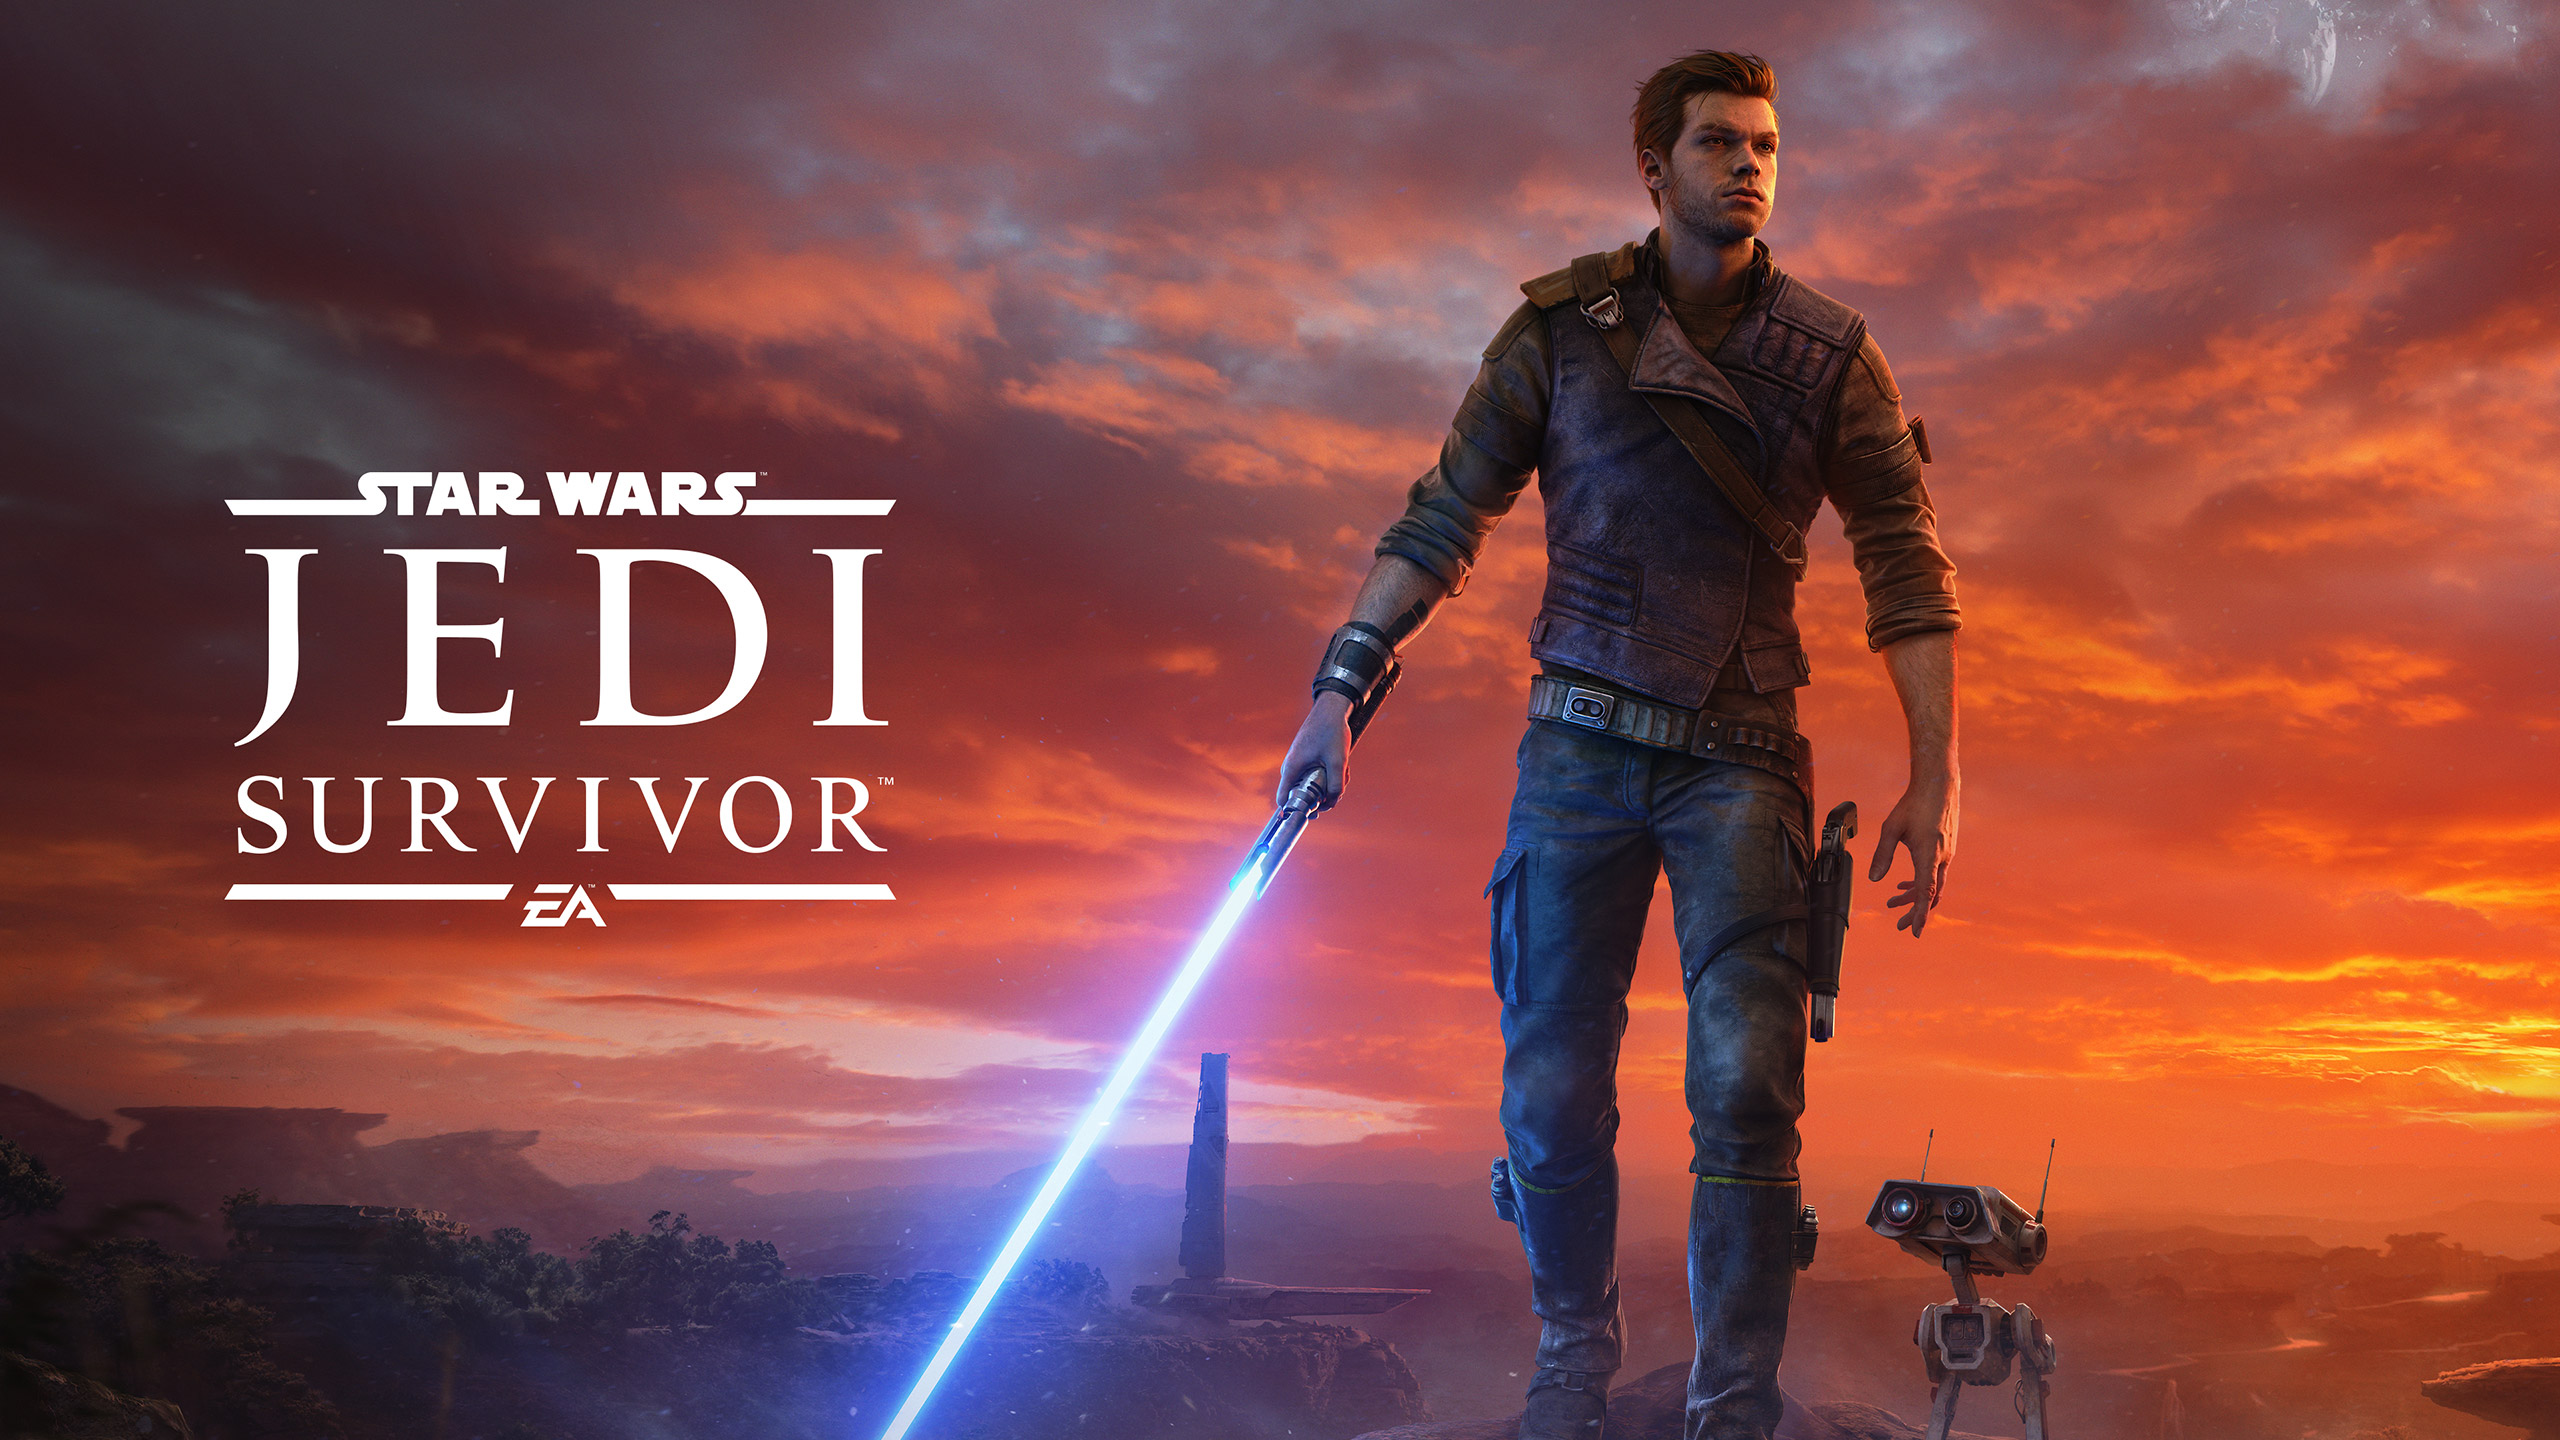 Star Wars Jedi Survivor Poster